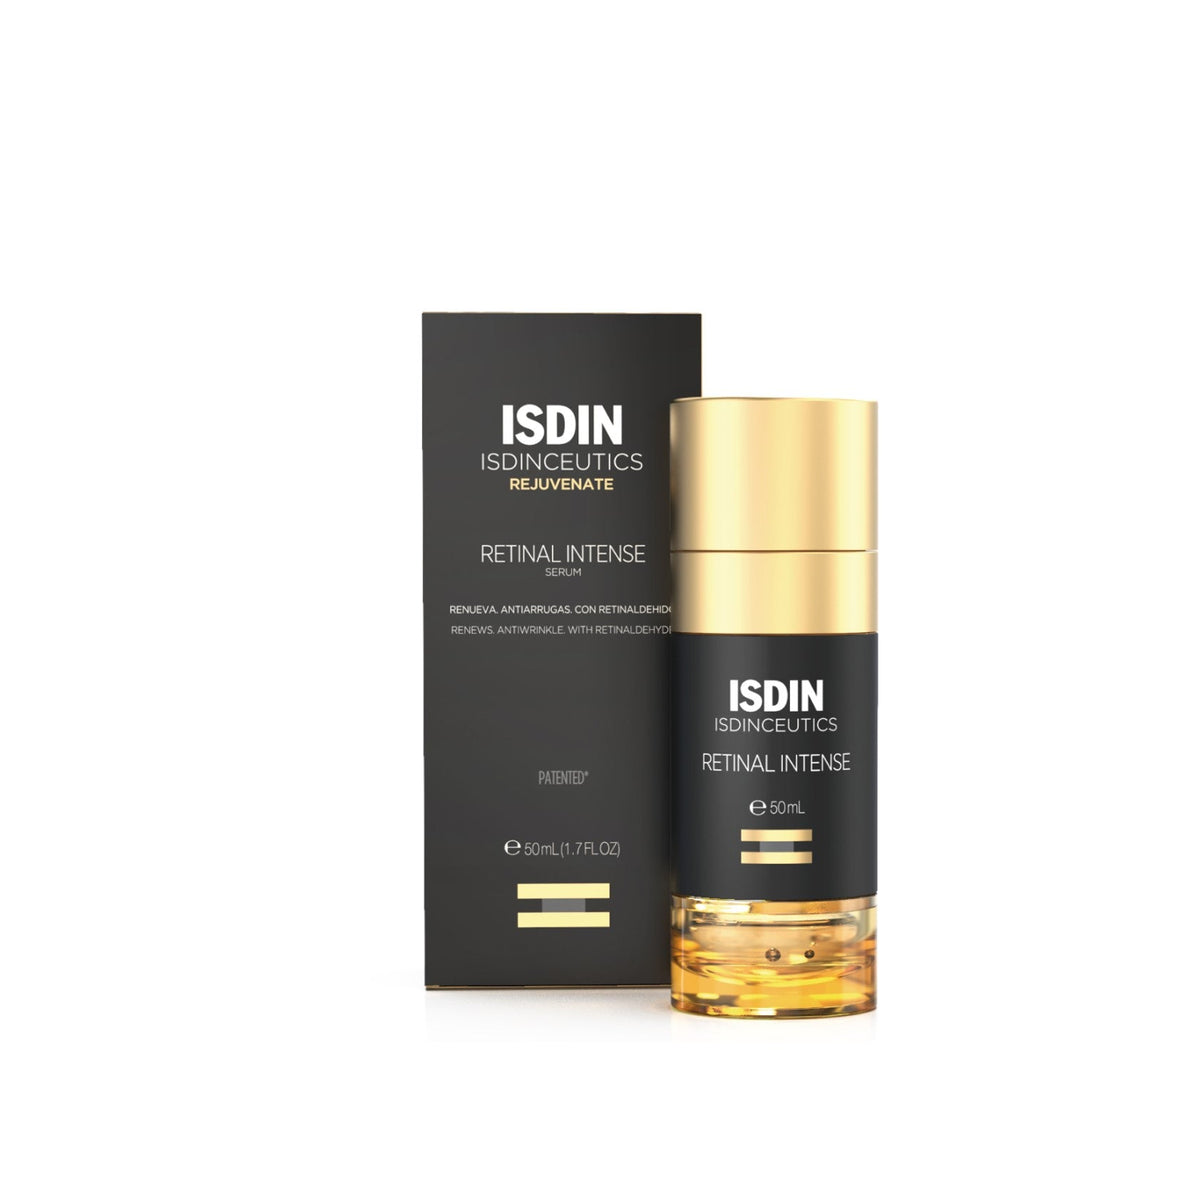 ISDIN Isdinceutics Retinal Intense Serum 50ml